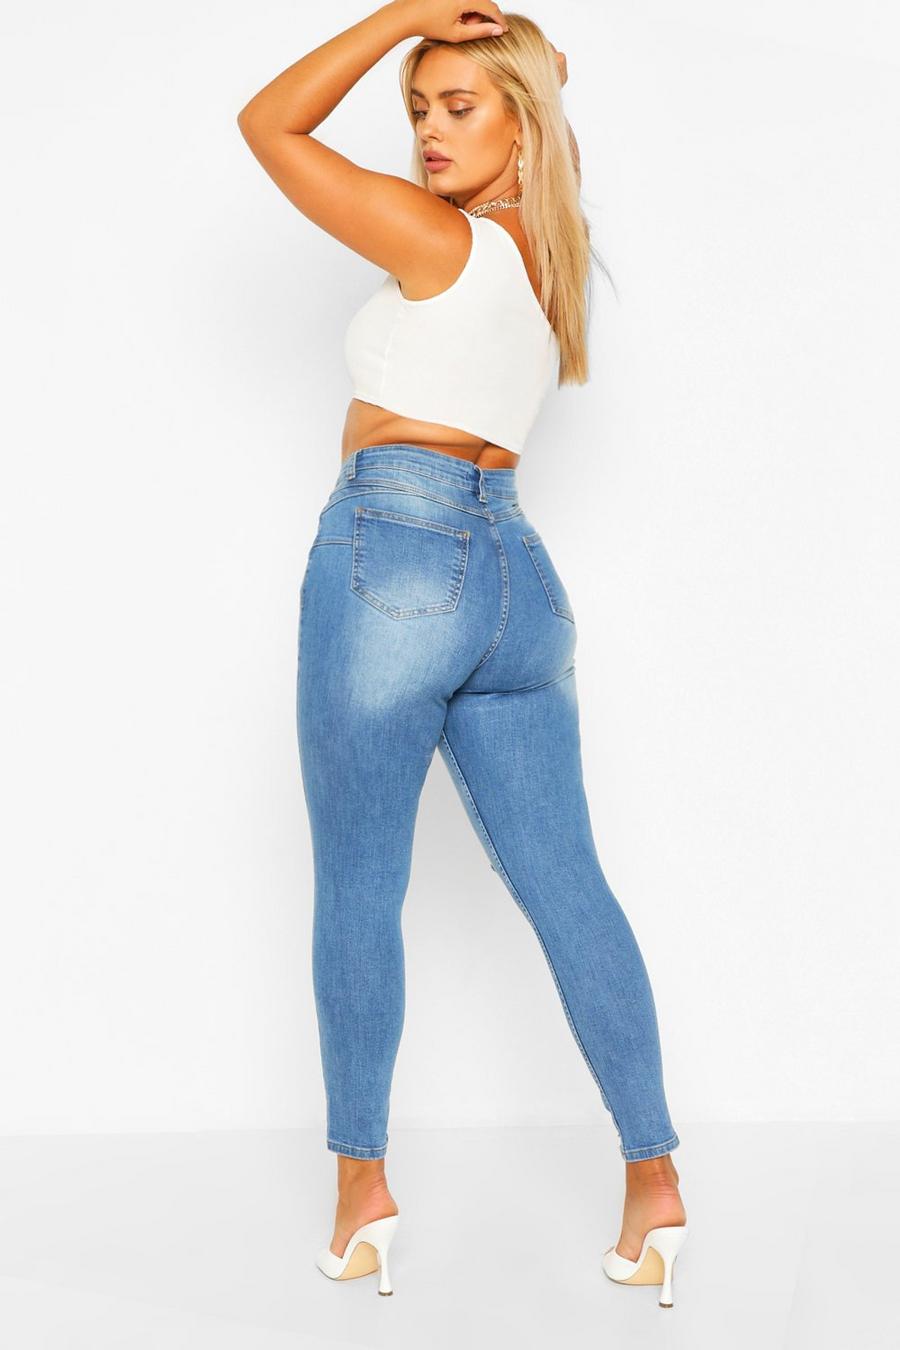 כחול סקיני ג'ינס Mid Rise מחטב ישבן עם קרעים, במידות גדולות image number 1